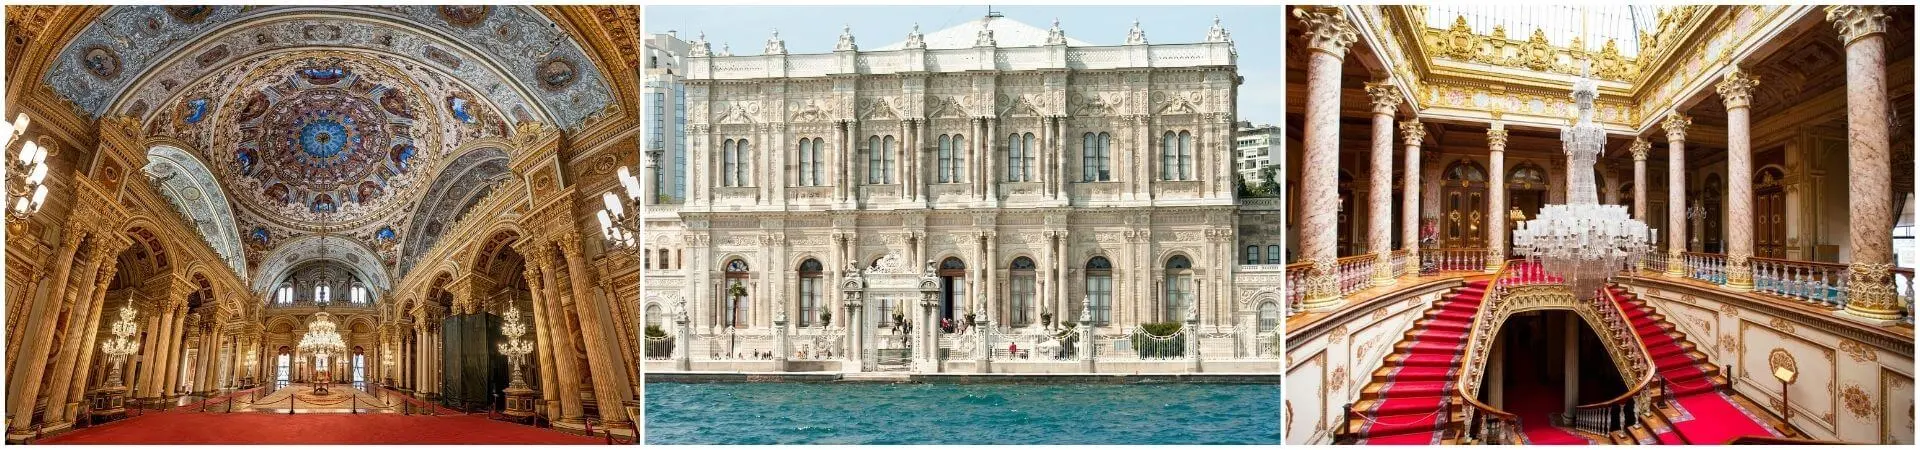 Führung durch den Dolmabahçe-Palast